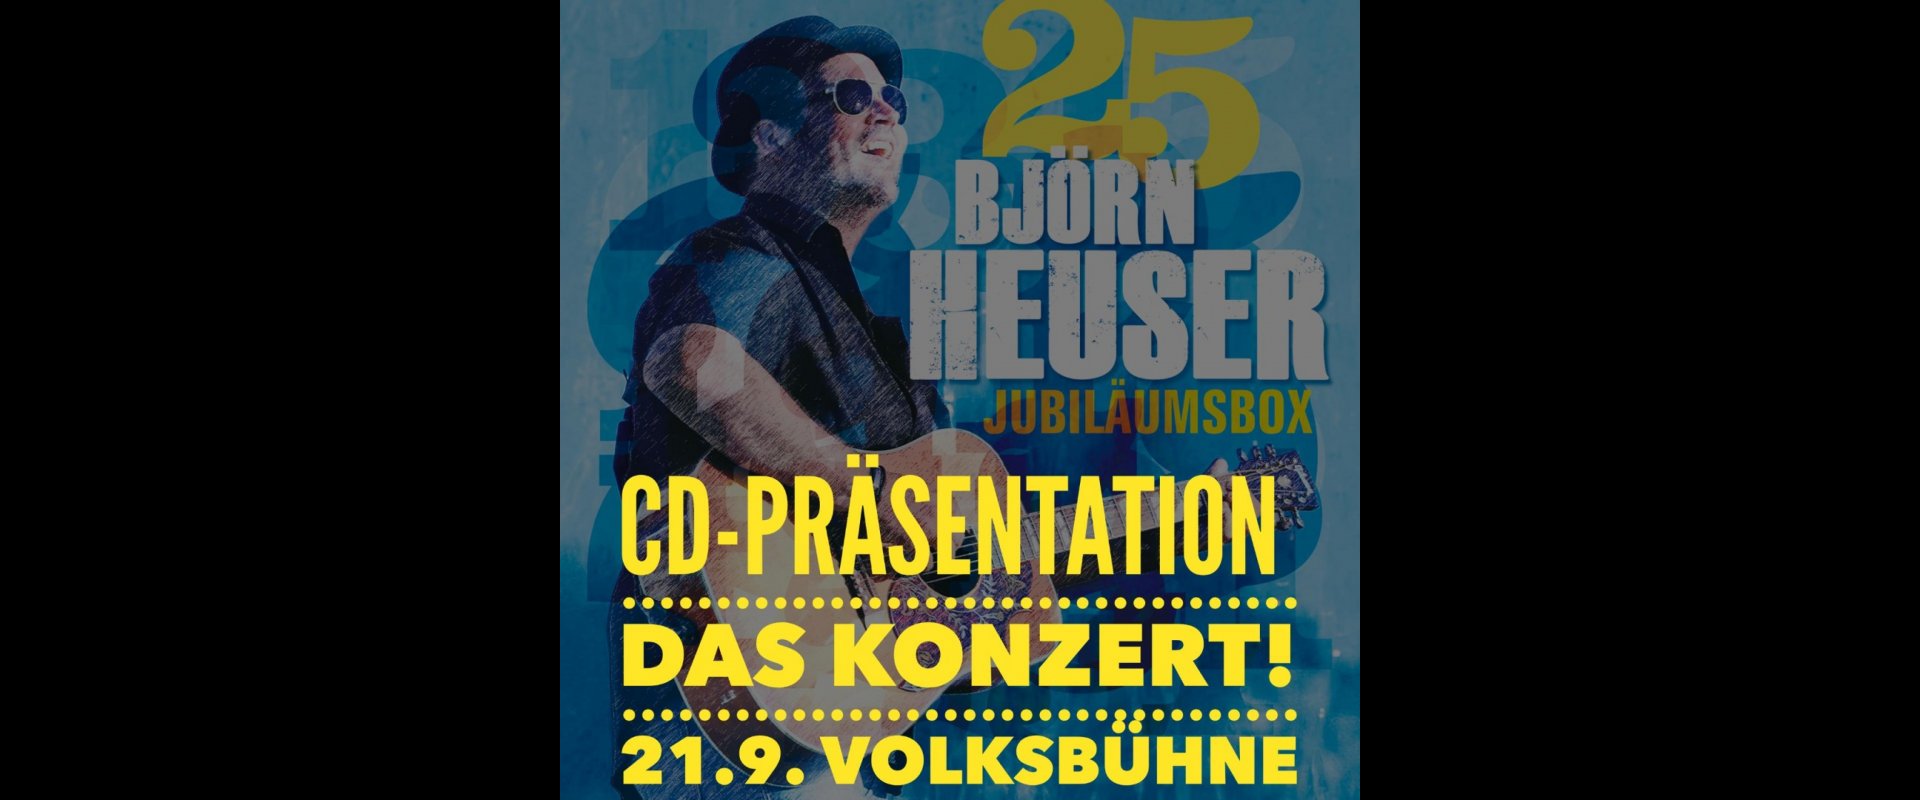 25 Jahre Björn Heuser  - Das Konzert!